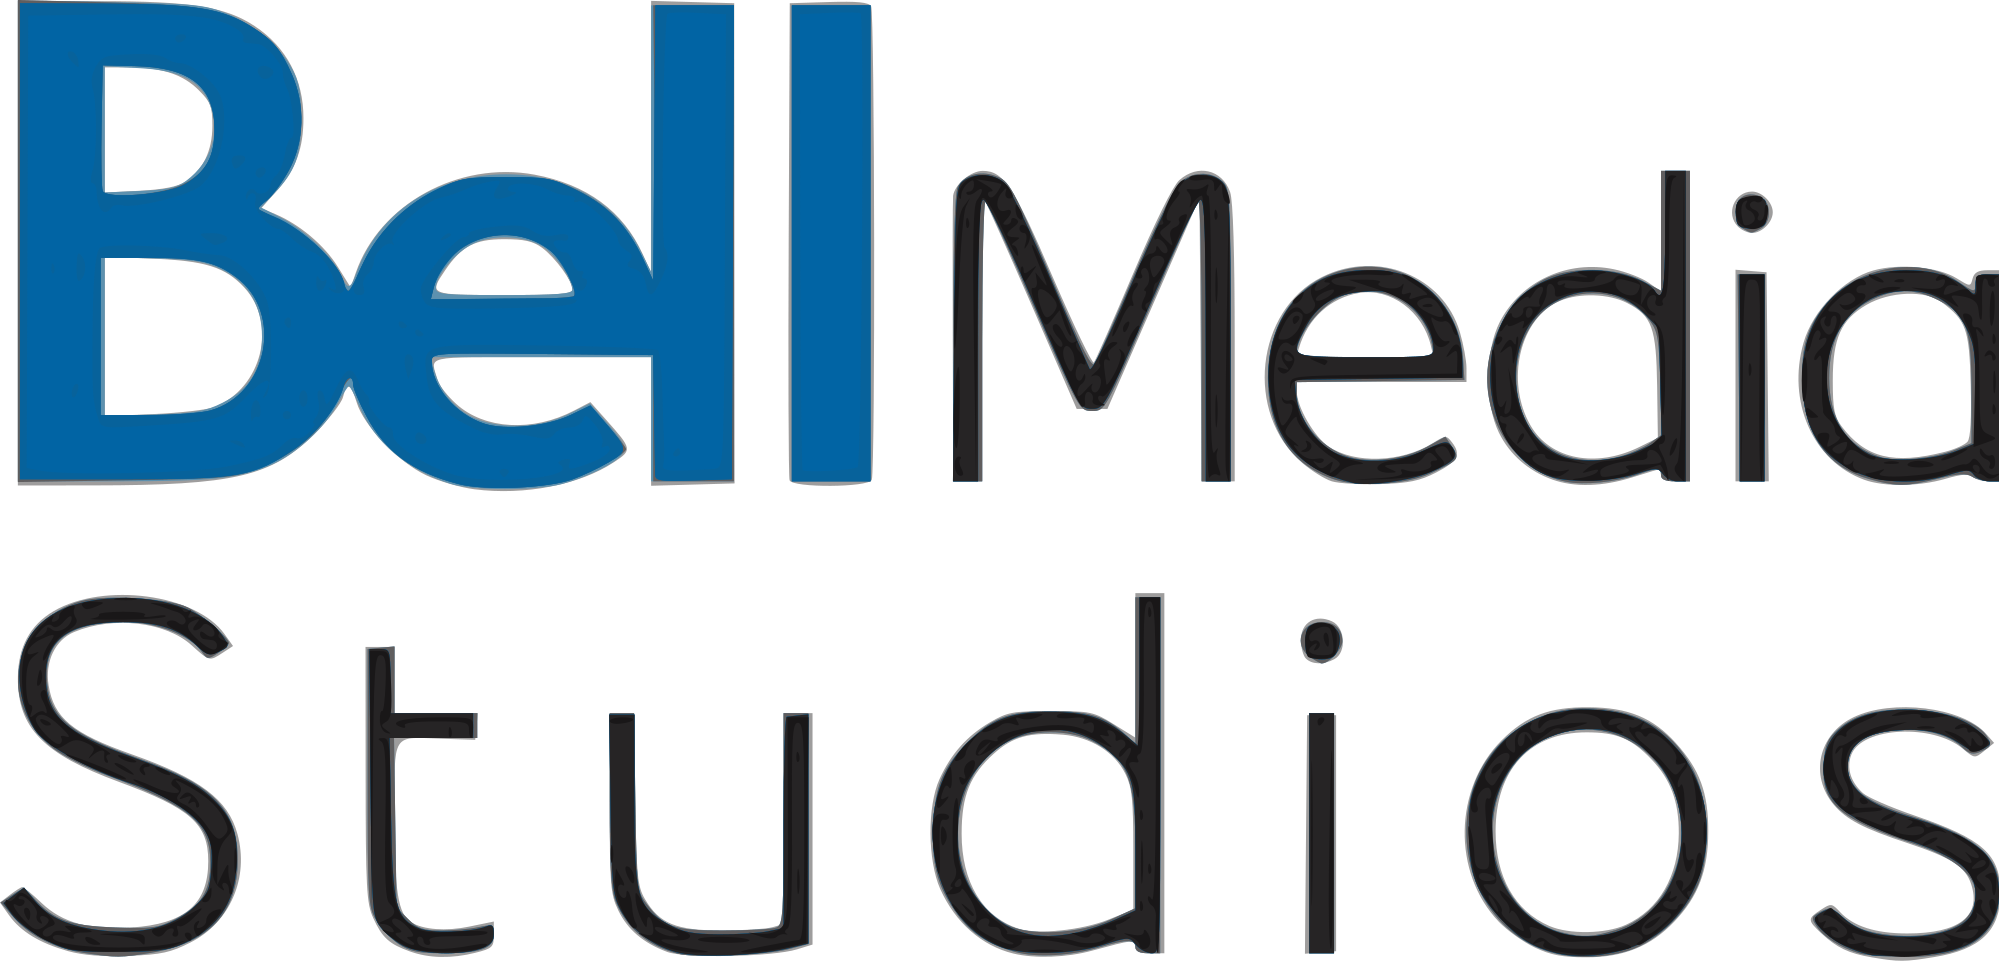 Bell Media Studios